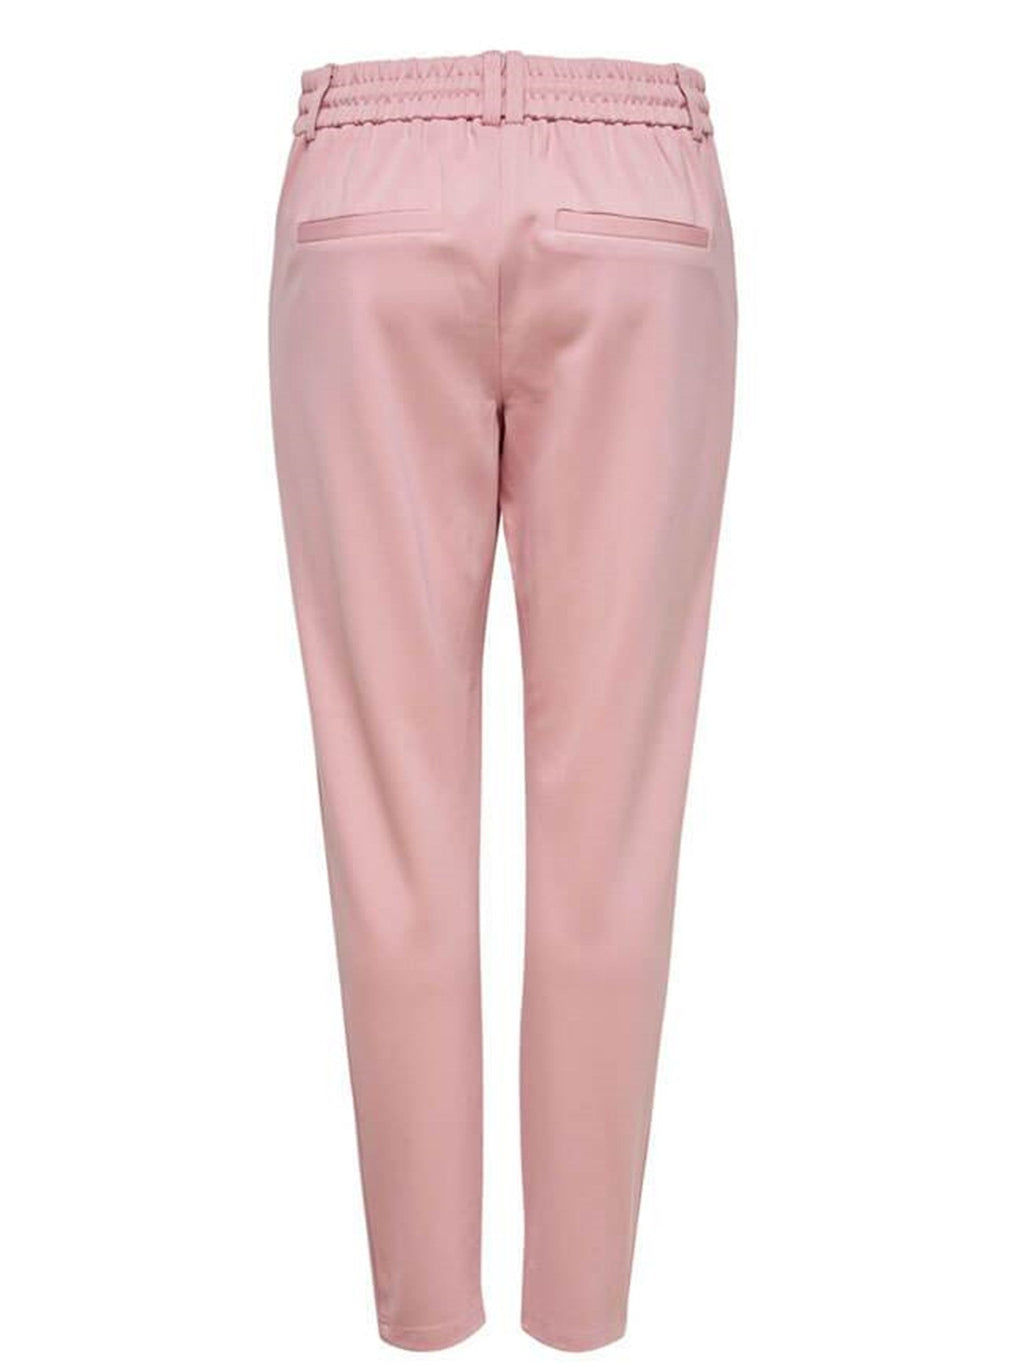 Poptrash Pants - Pink